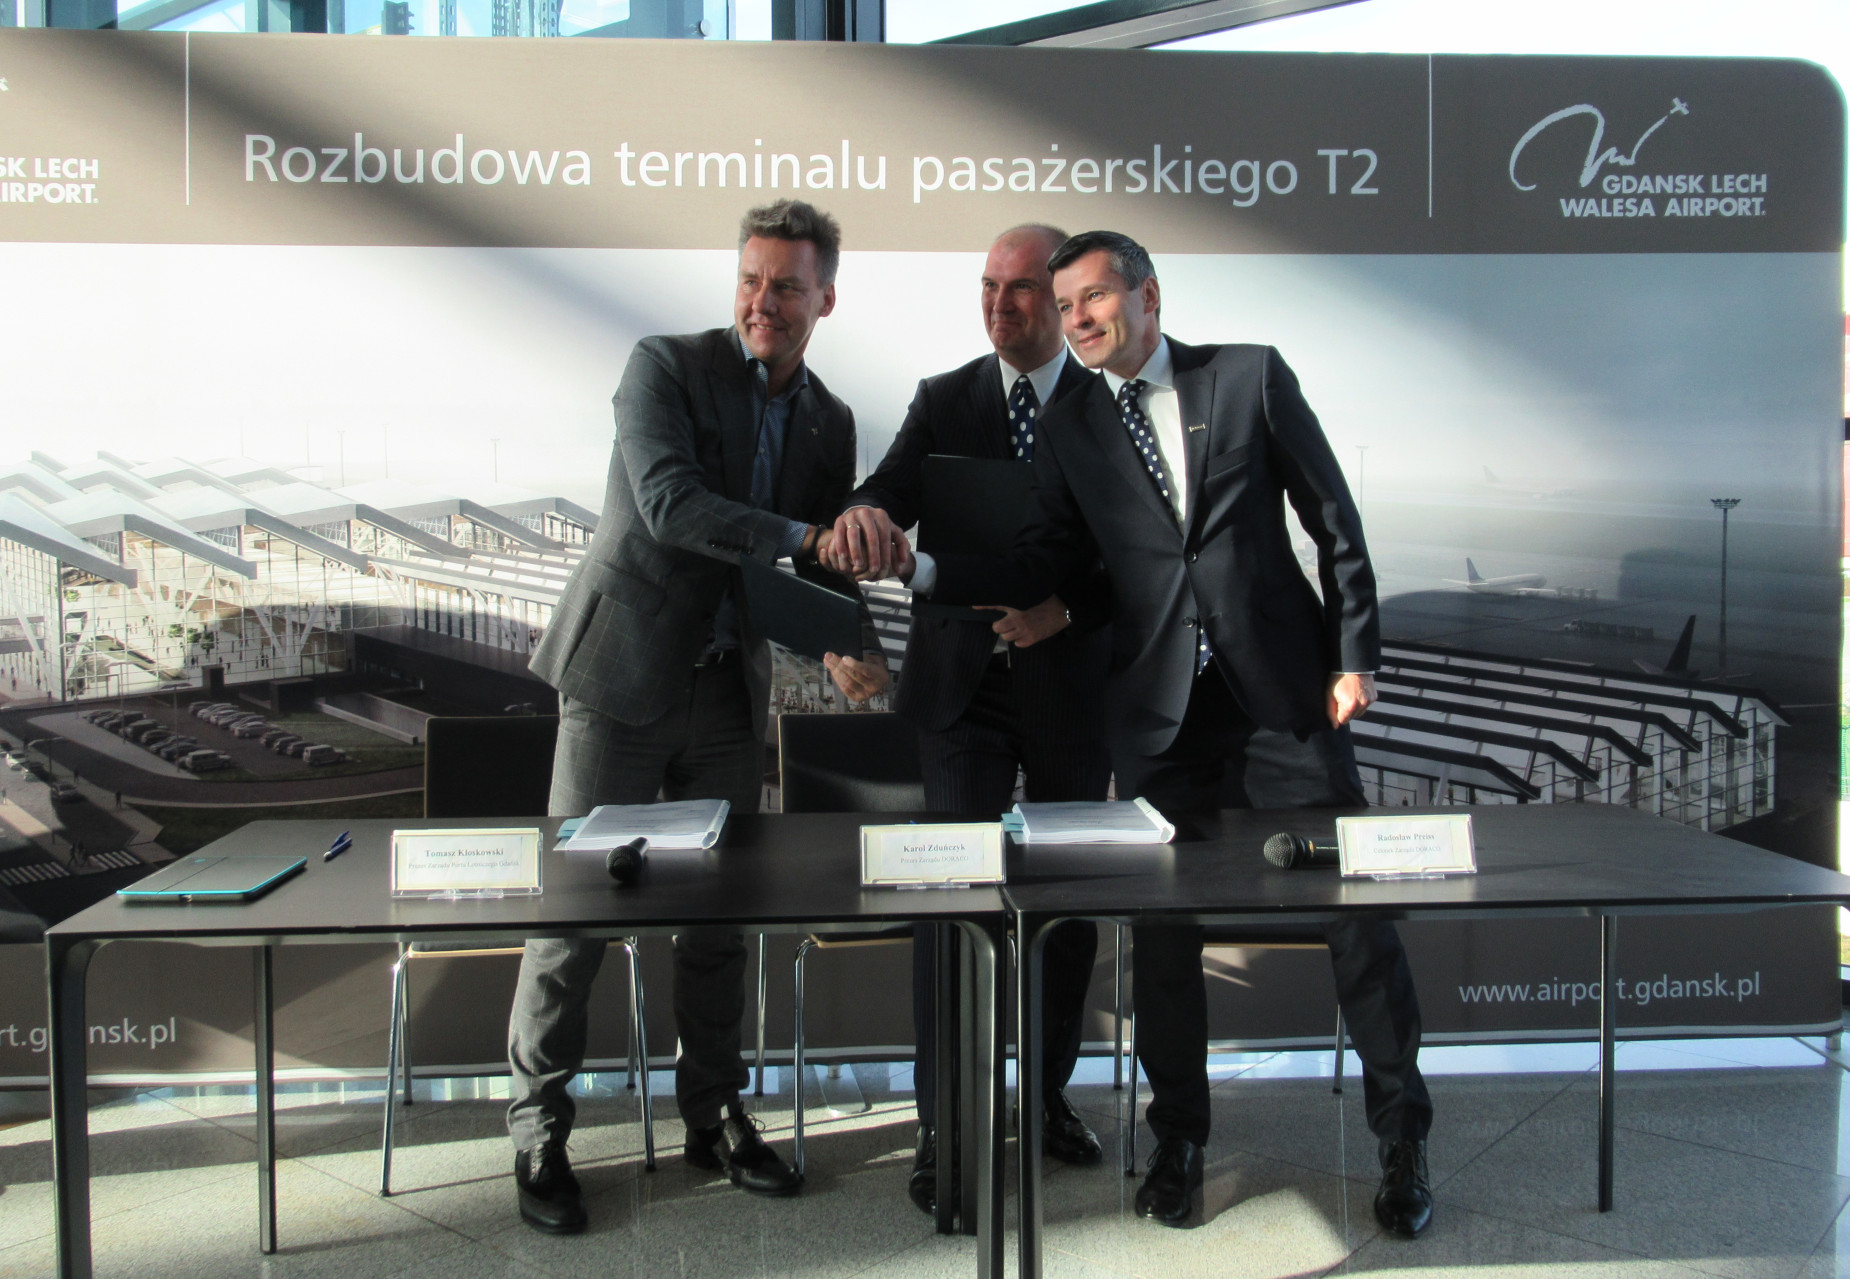 Umowa podpisana, można zaczynać. Rozpoczyna się rozbudowa terminala T2 gdańskiego lotniska